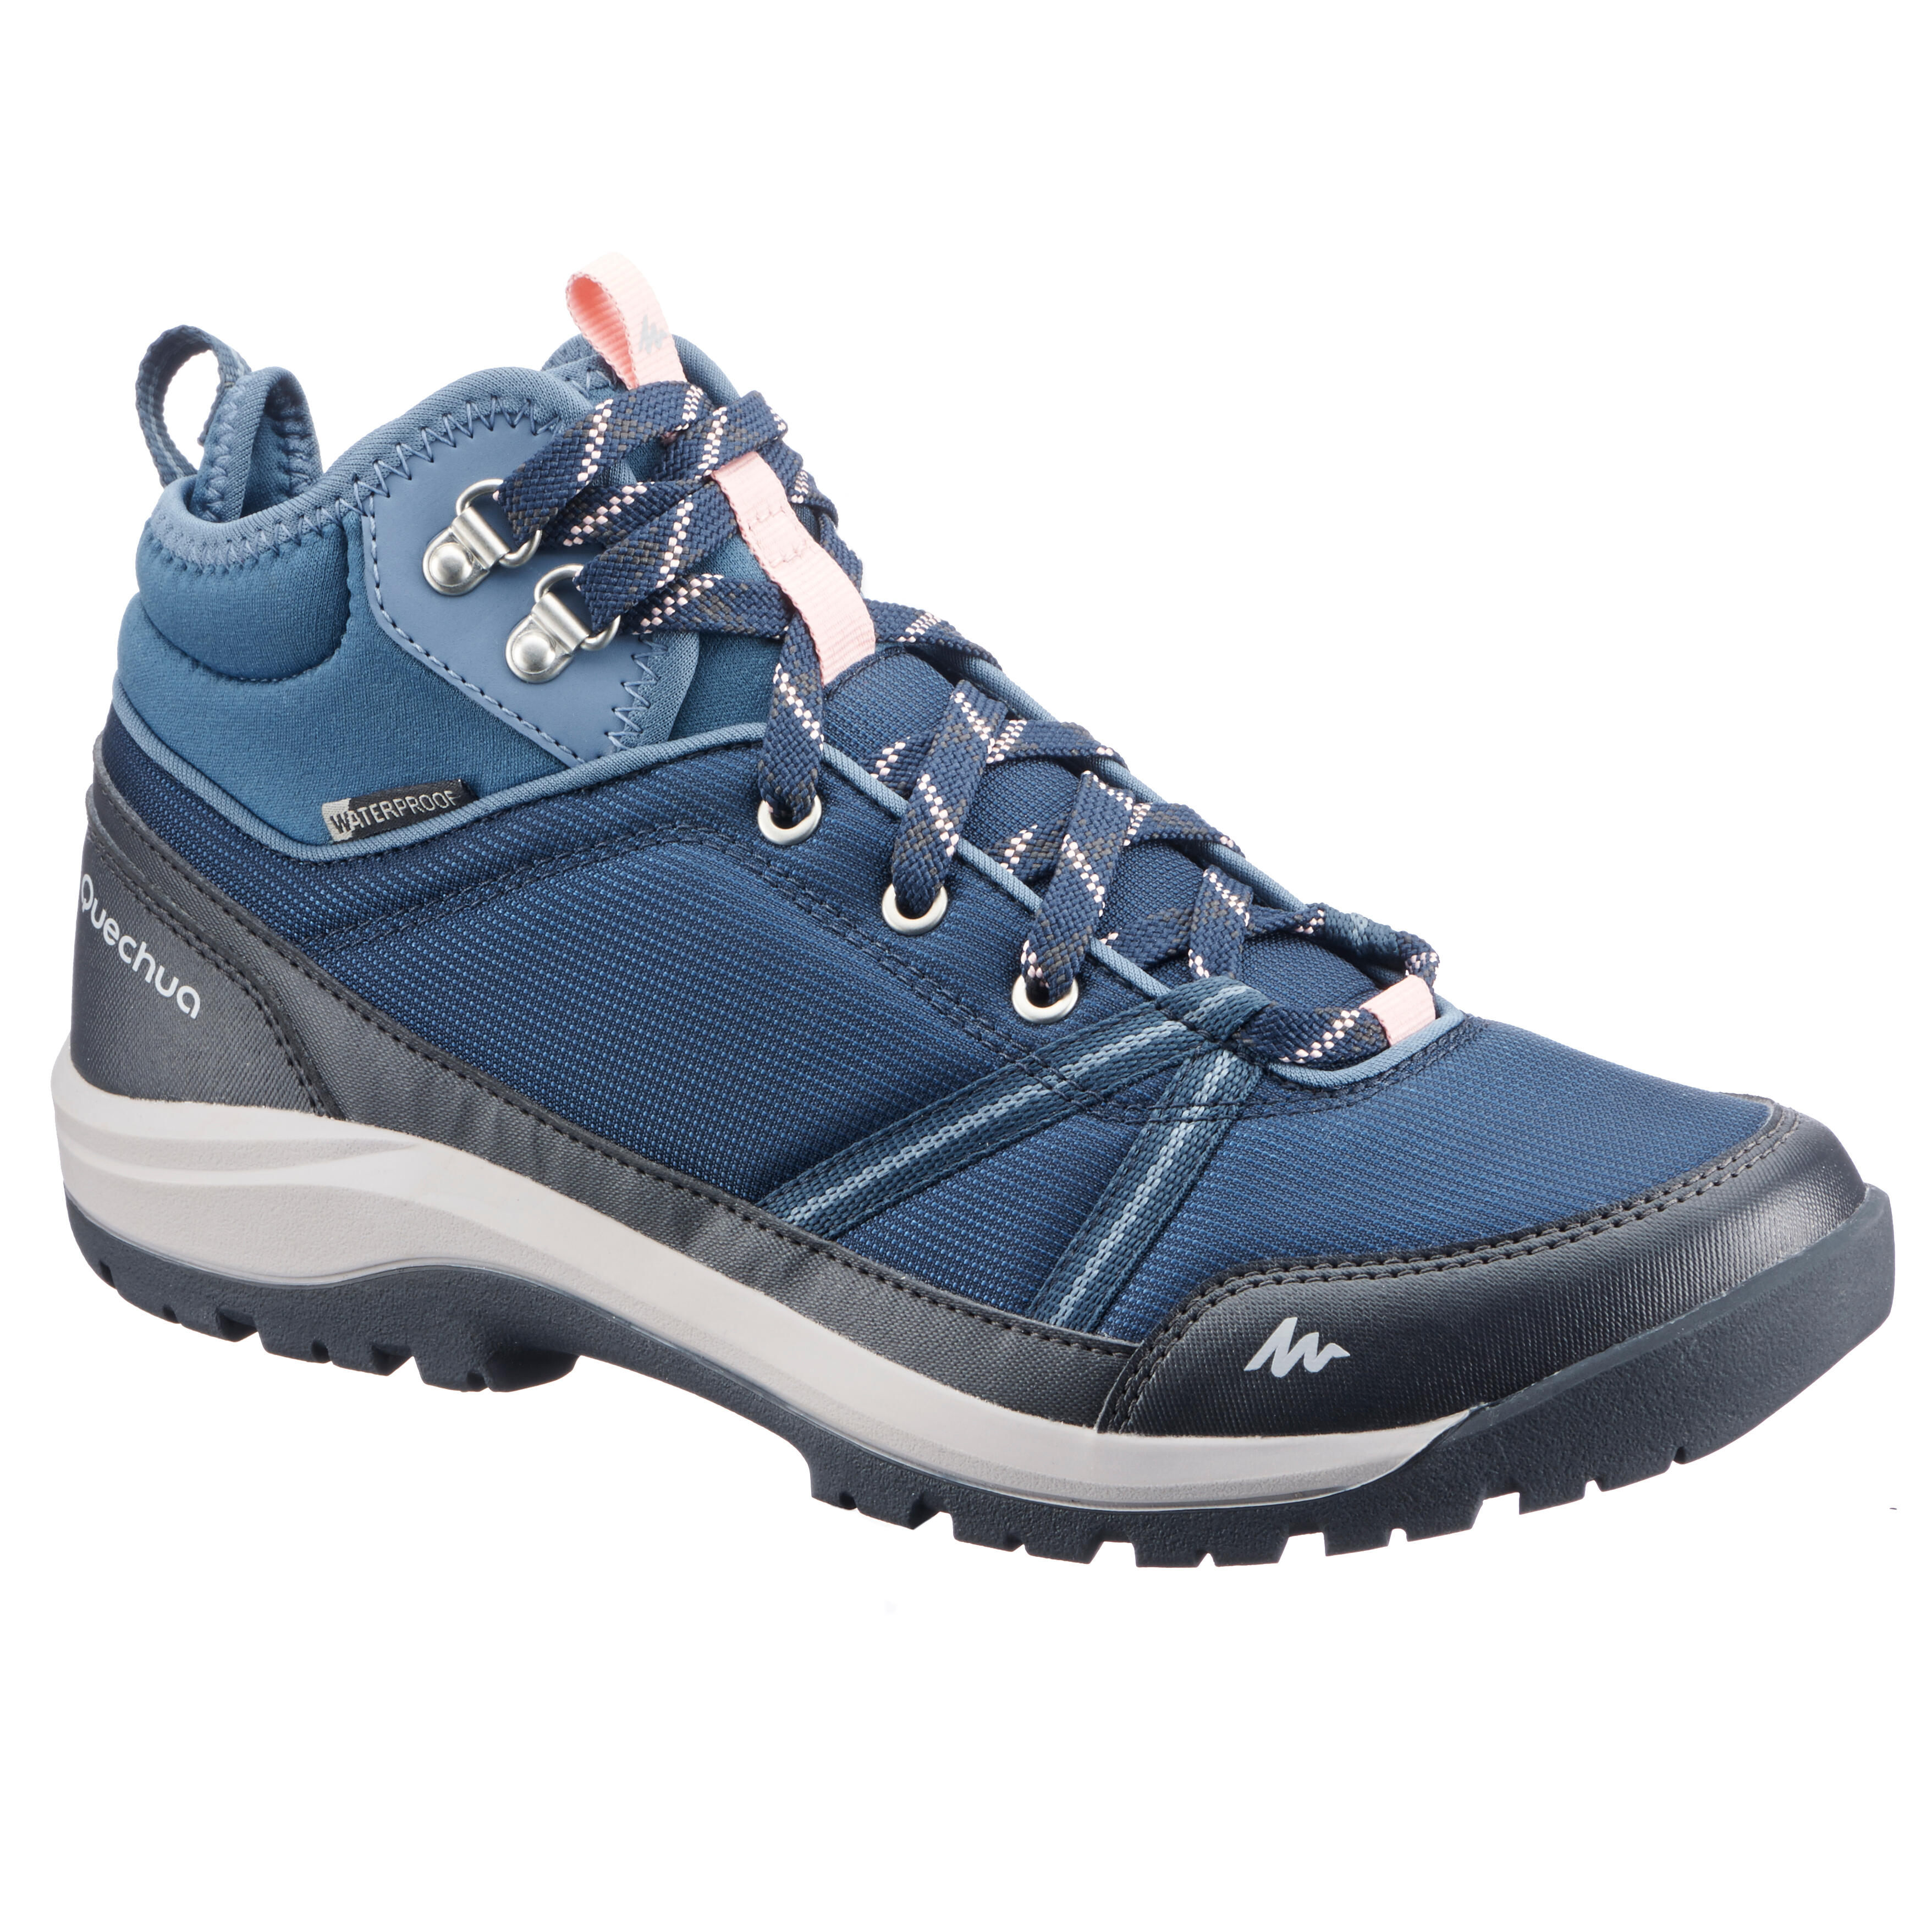 decathlon waterproof trekking shoes